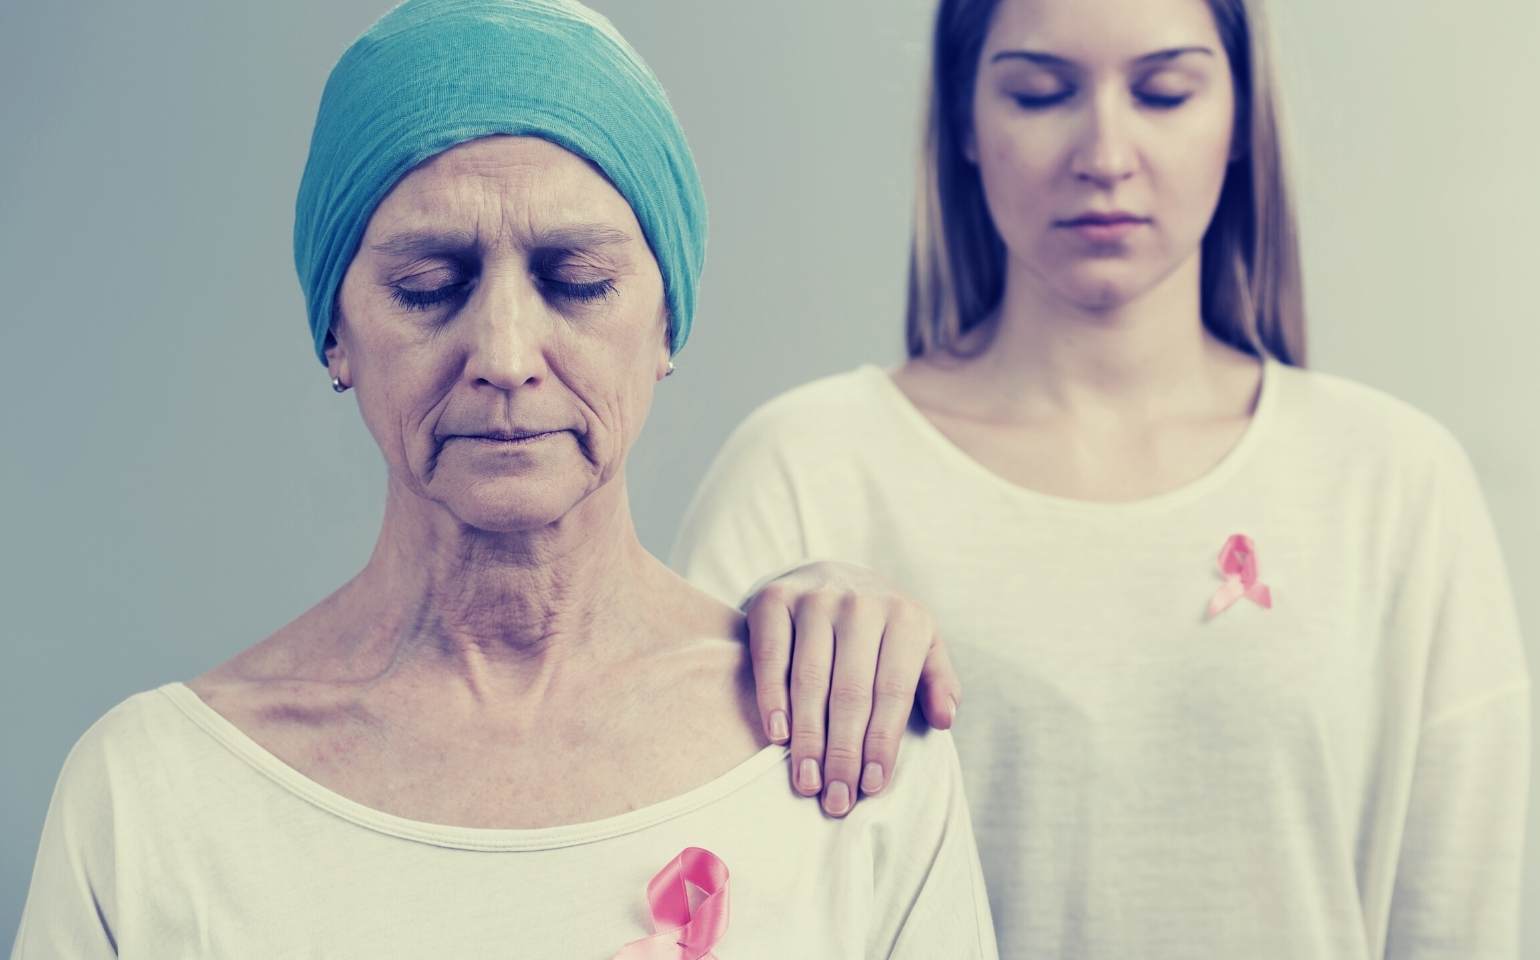 trodelvy sacituzumab goveticana cancer de mama